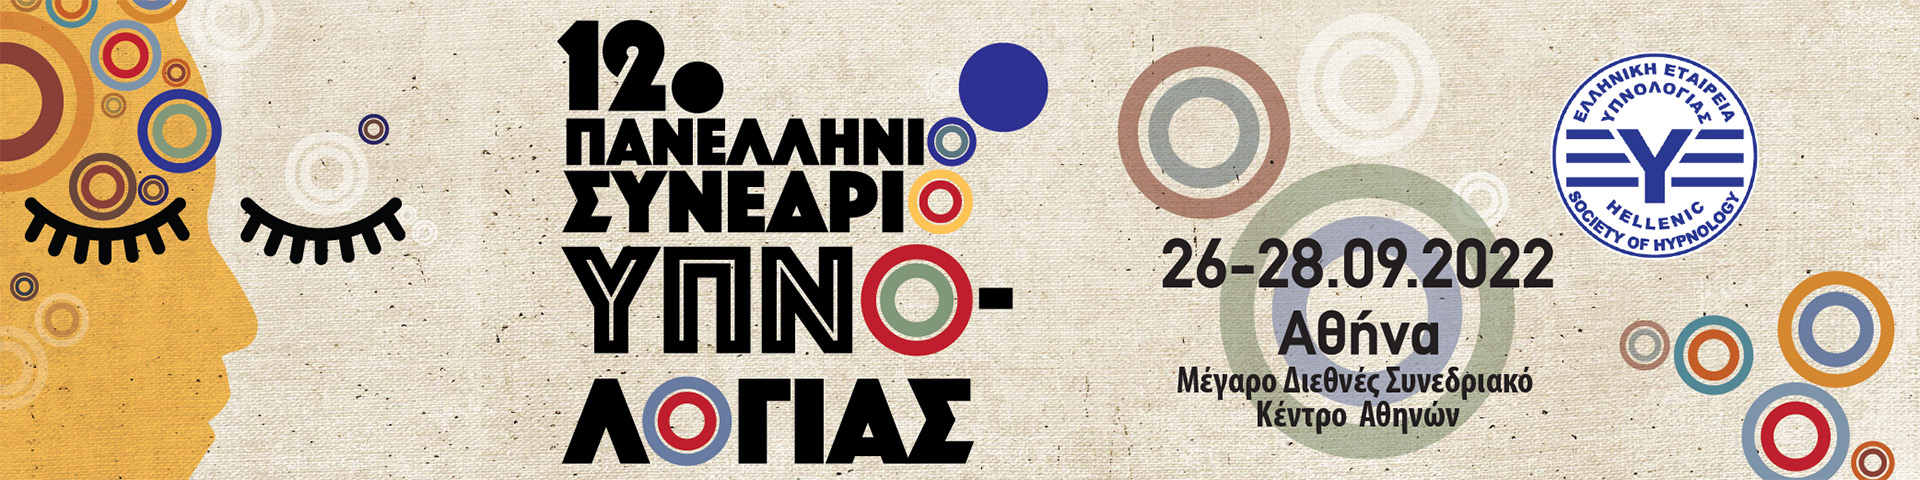 12ο Πανελλήνιο Συνέδριο Υπνολογίας, 26-28/9/2022 της Ελληνικής Εταιρείας Υπνολογίας, www.hypnology2022.gr